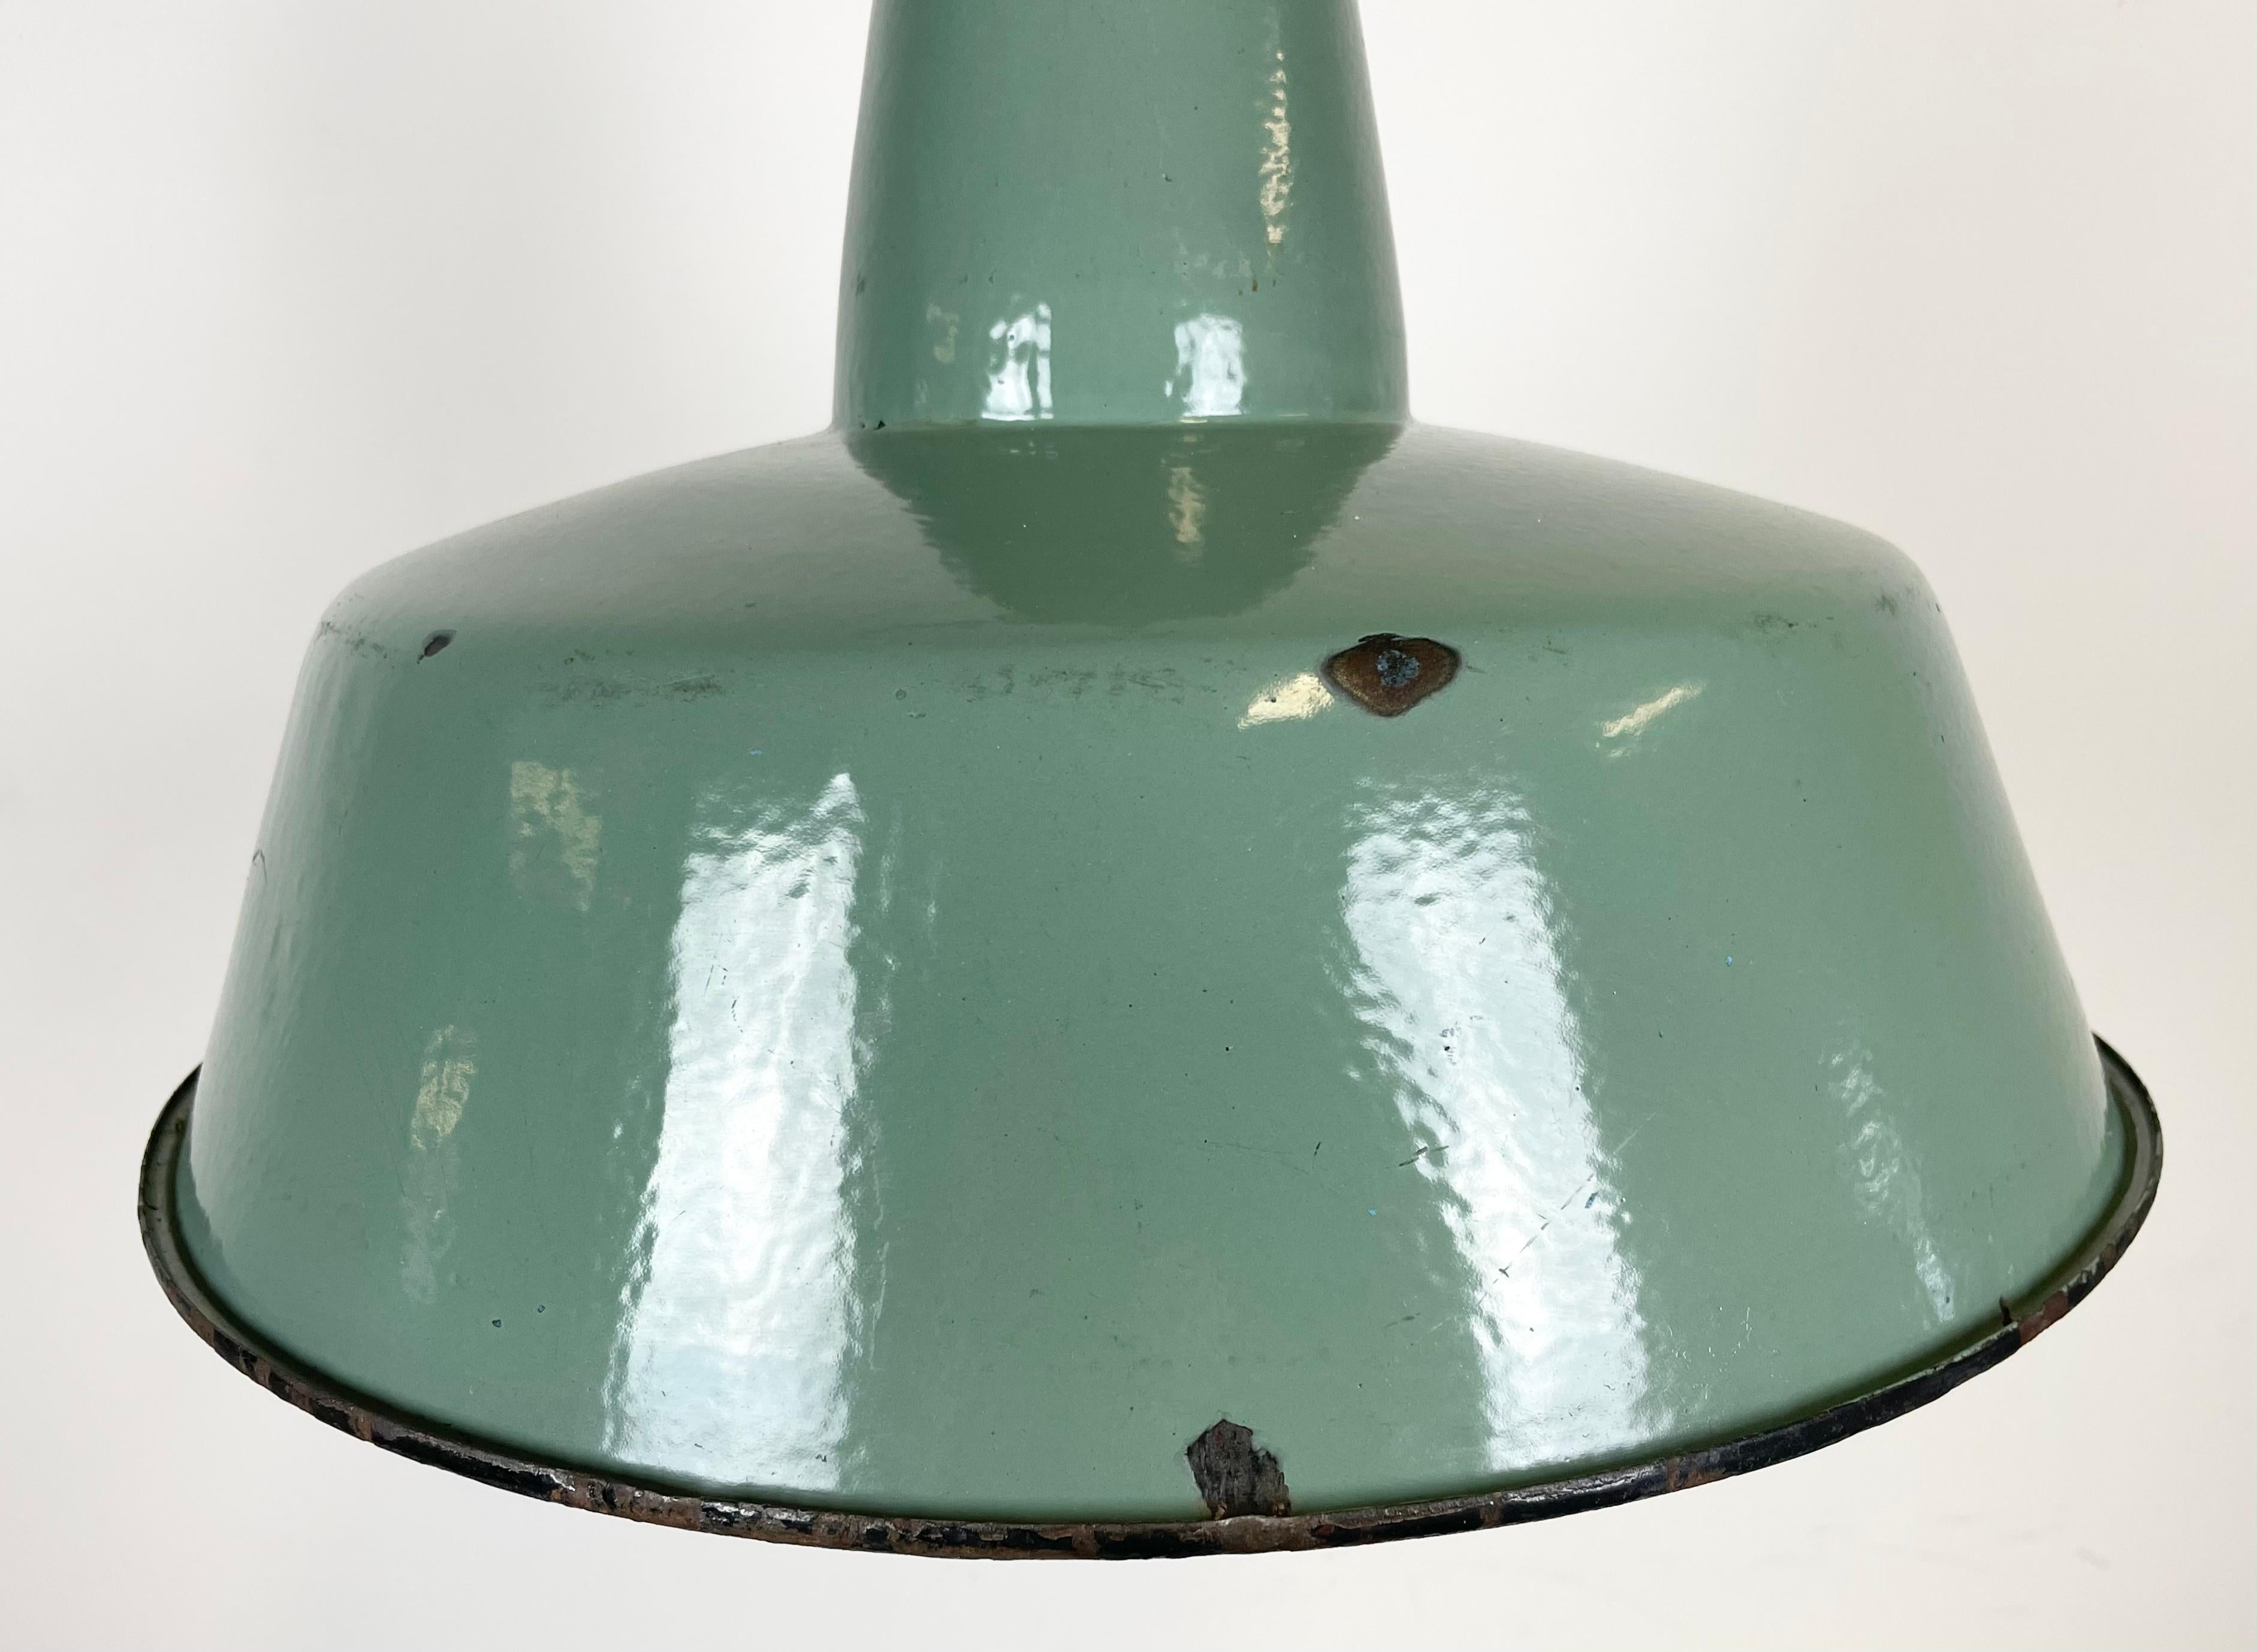 Industrielle Petrol-Emaille-Fabriklampe mit gusseiserner Platte, 1960er Jahre (Gegossen)